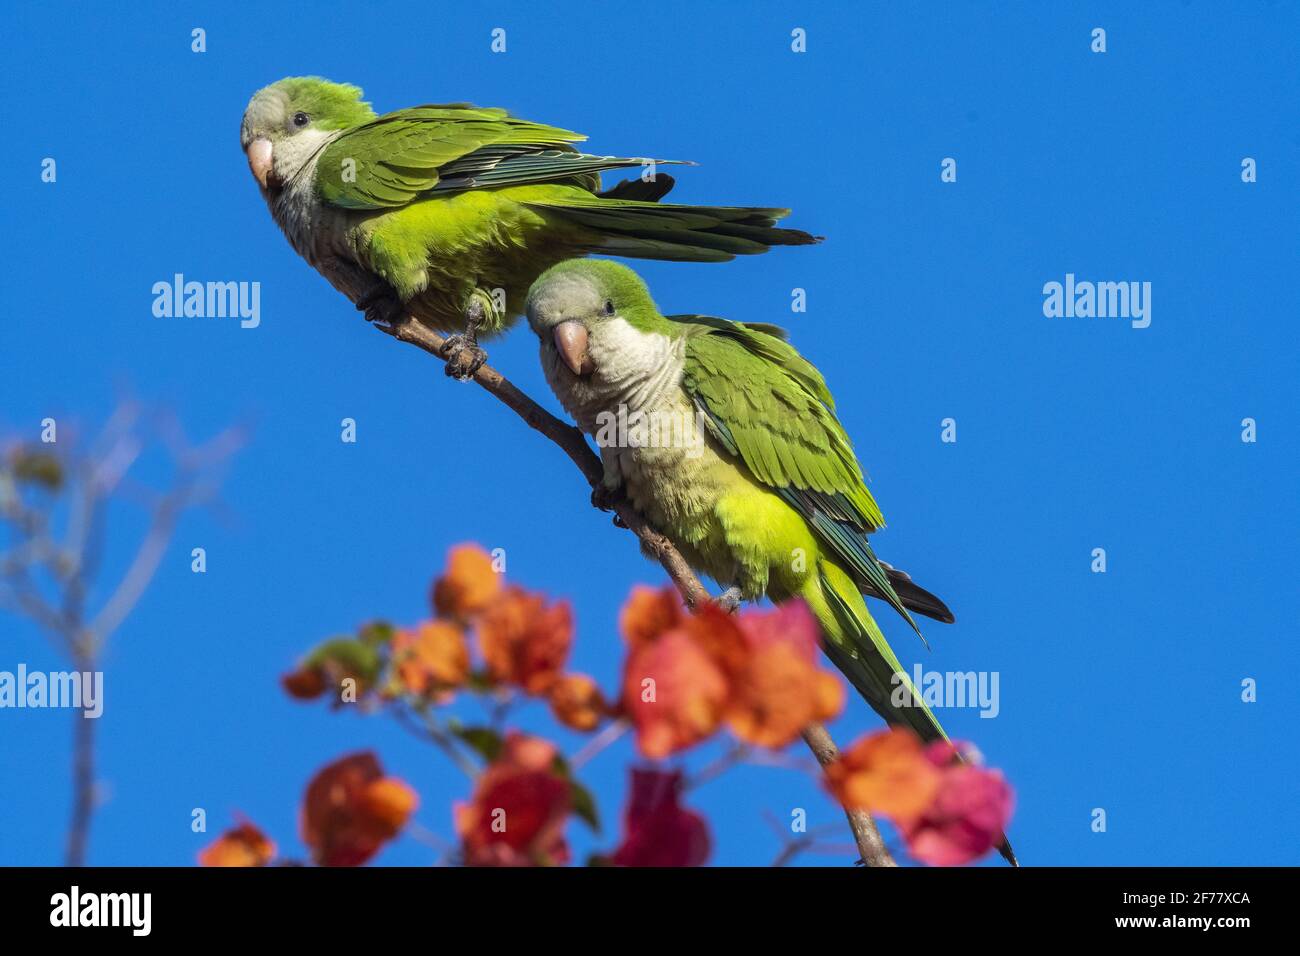 Brésil, Mato Grosso do Sul, Pantanal, Monk parakeet (Myiopsitta monachus) Banque D'Images